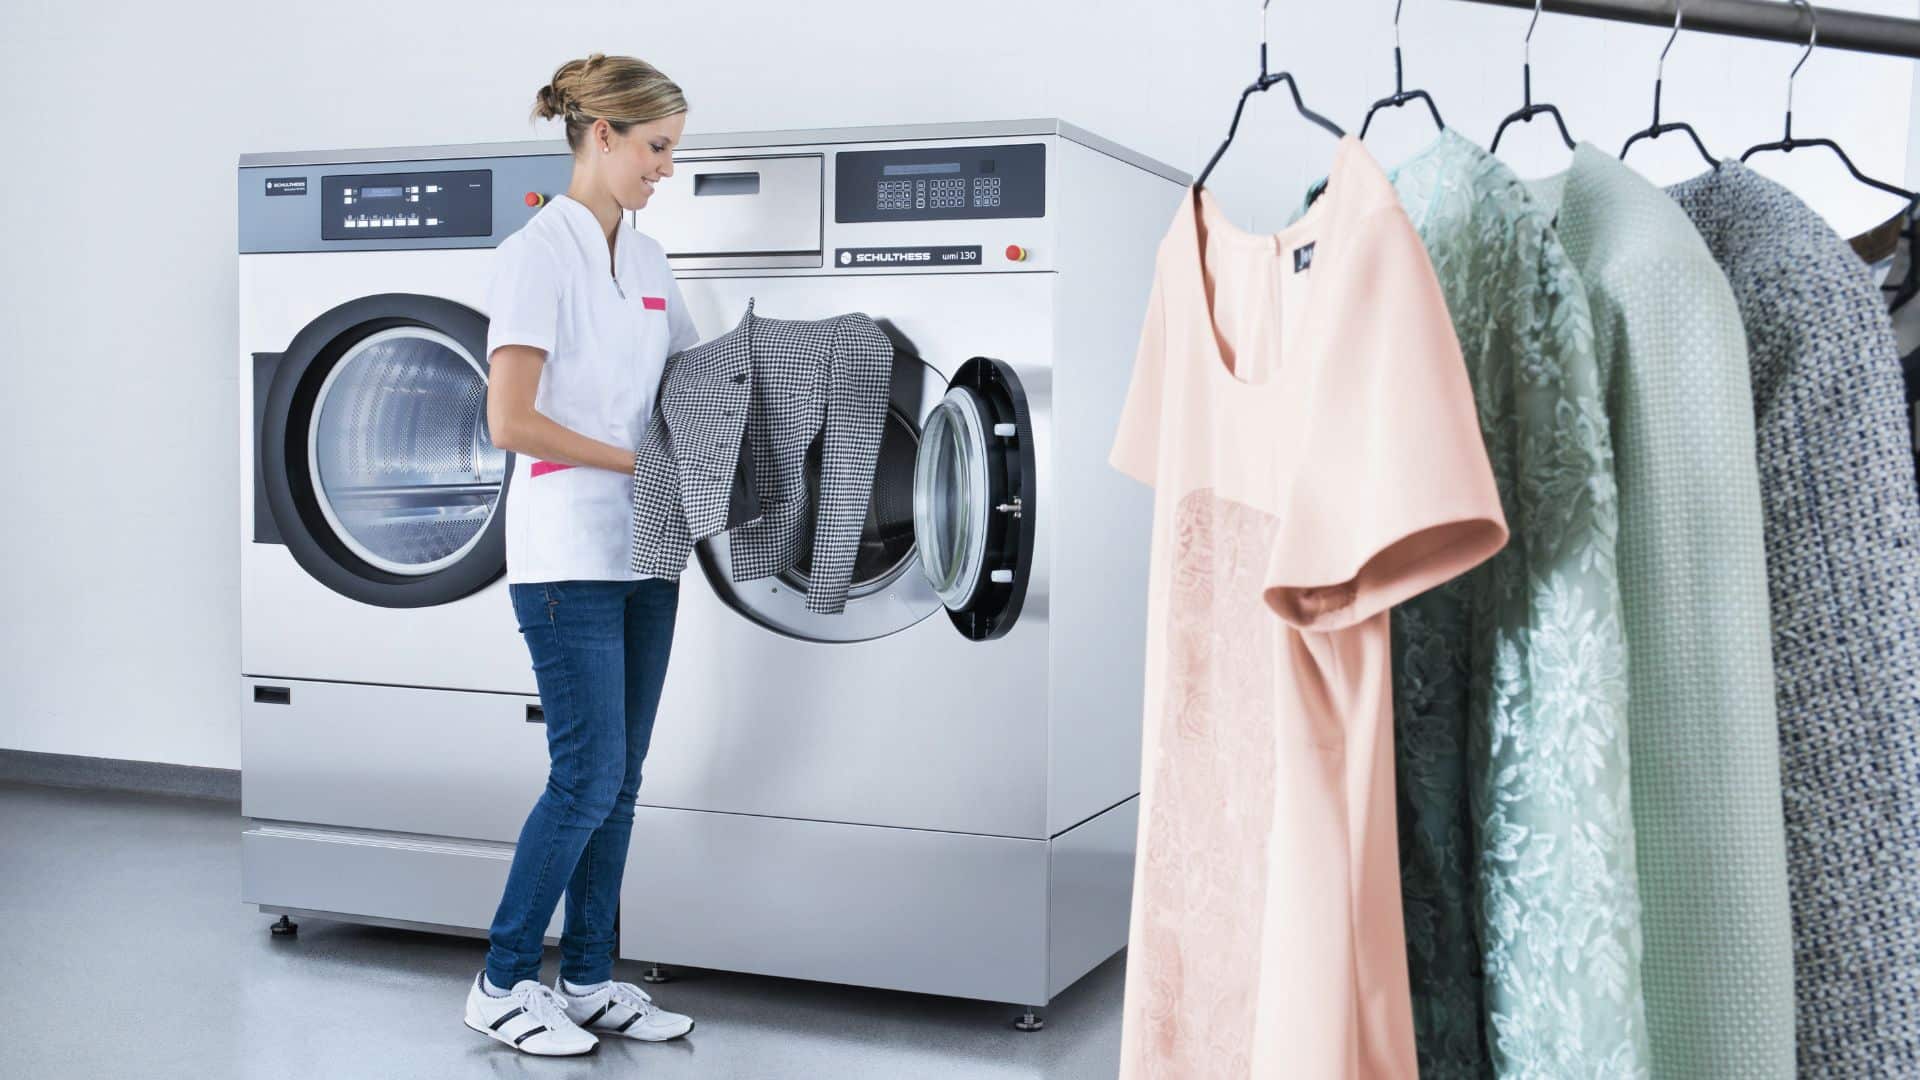 Laundry Services in Dubai